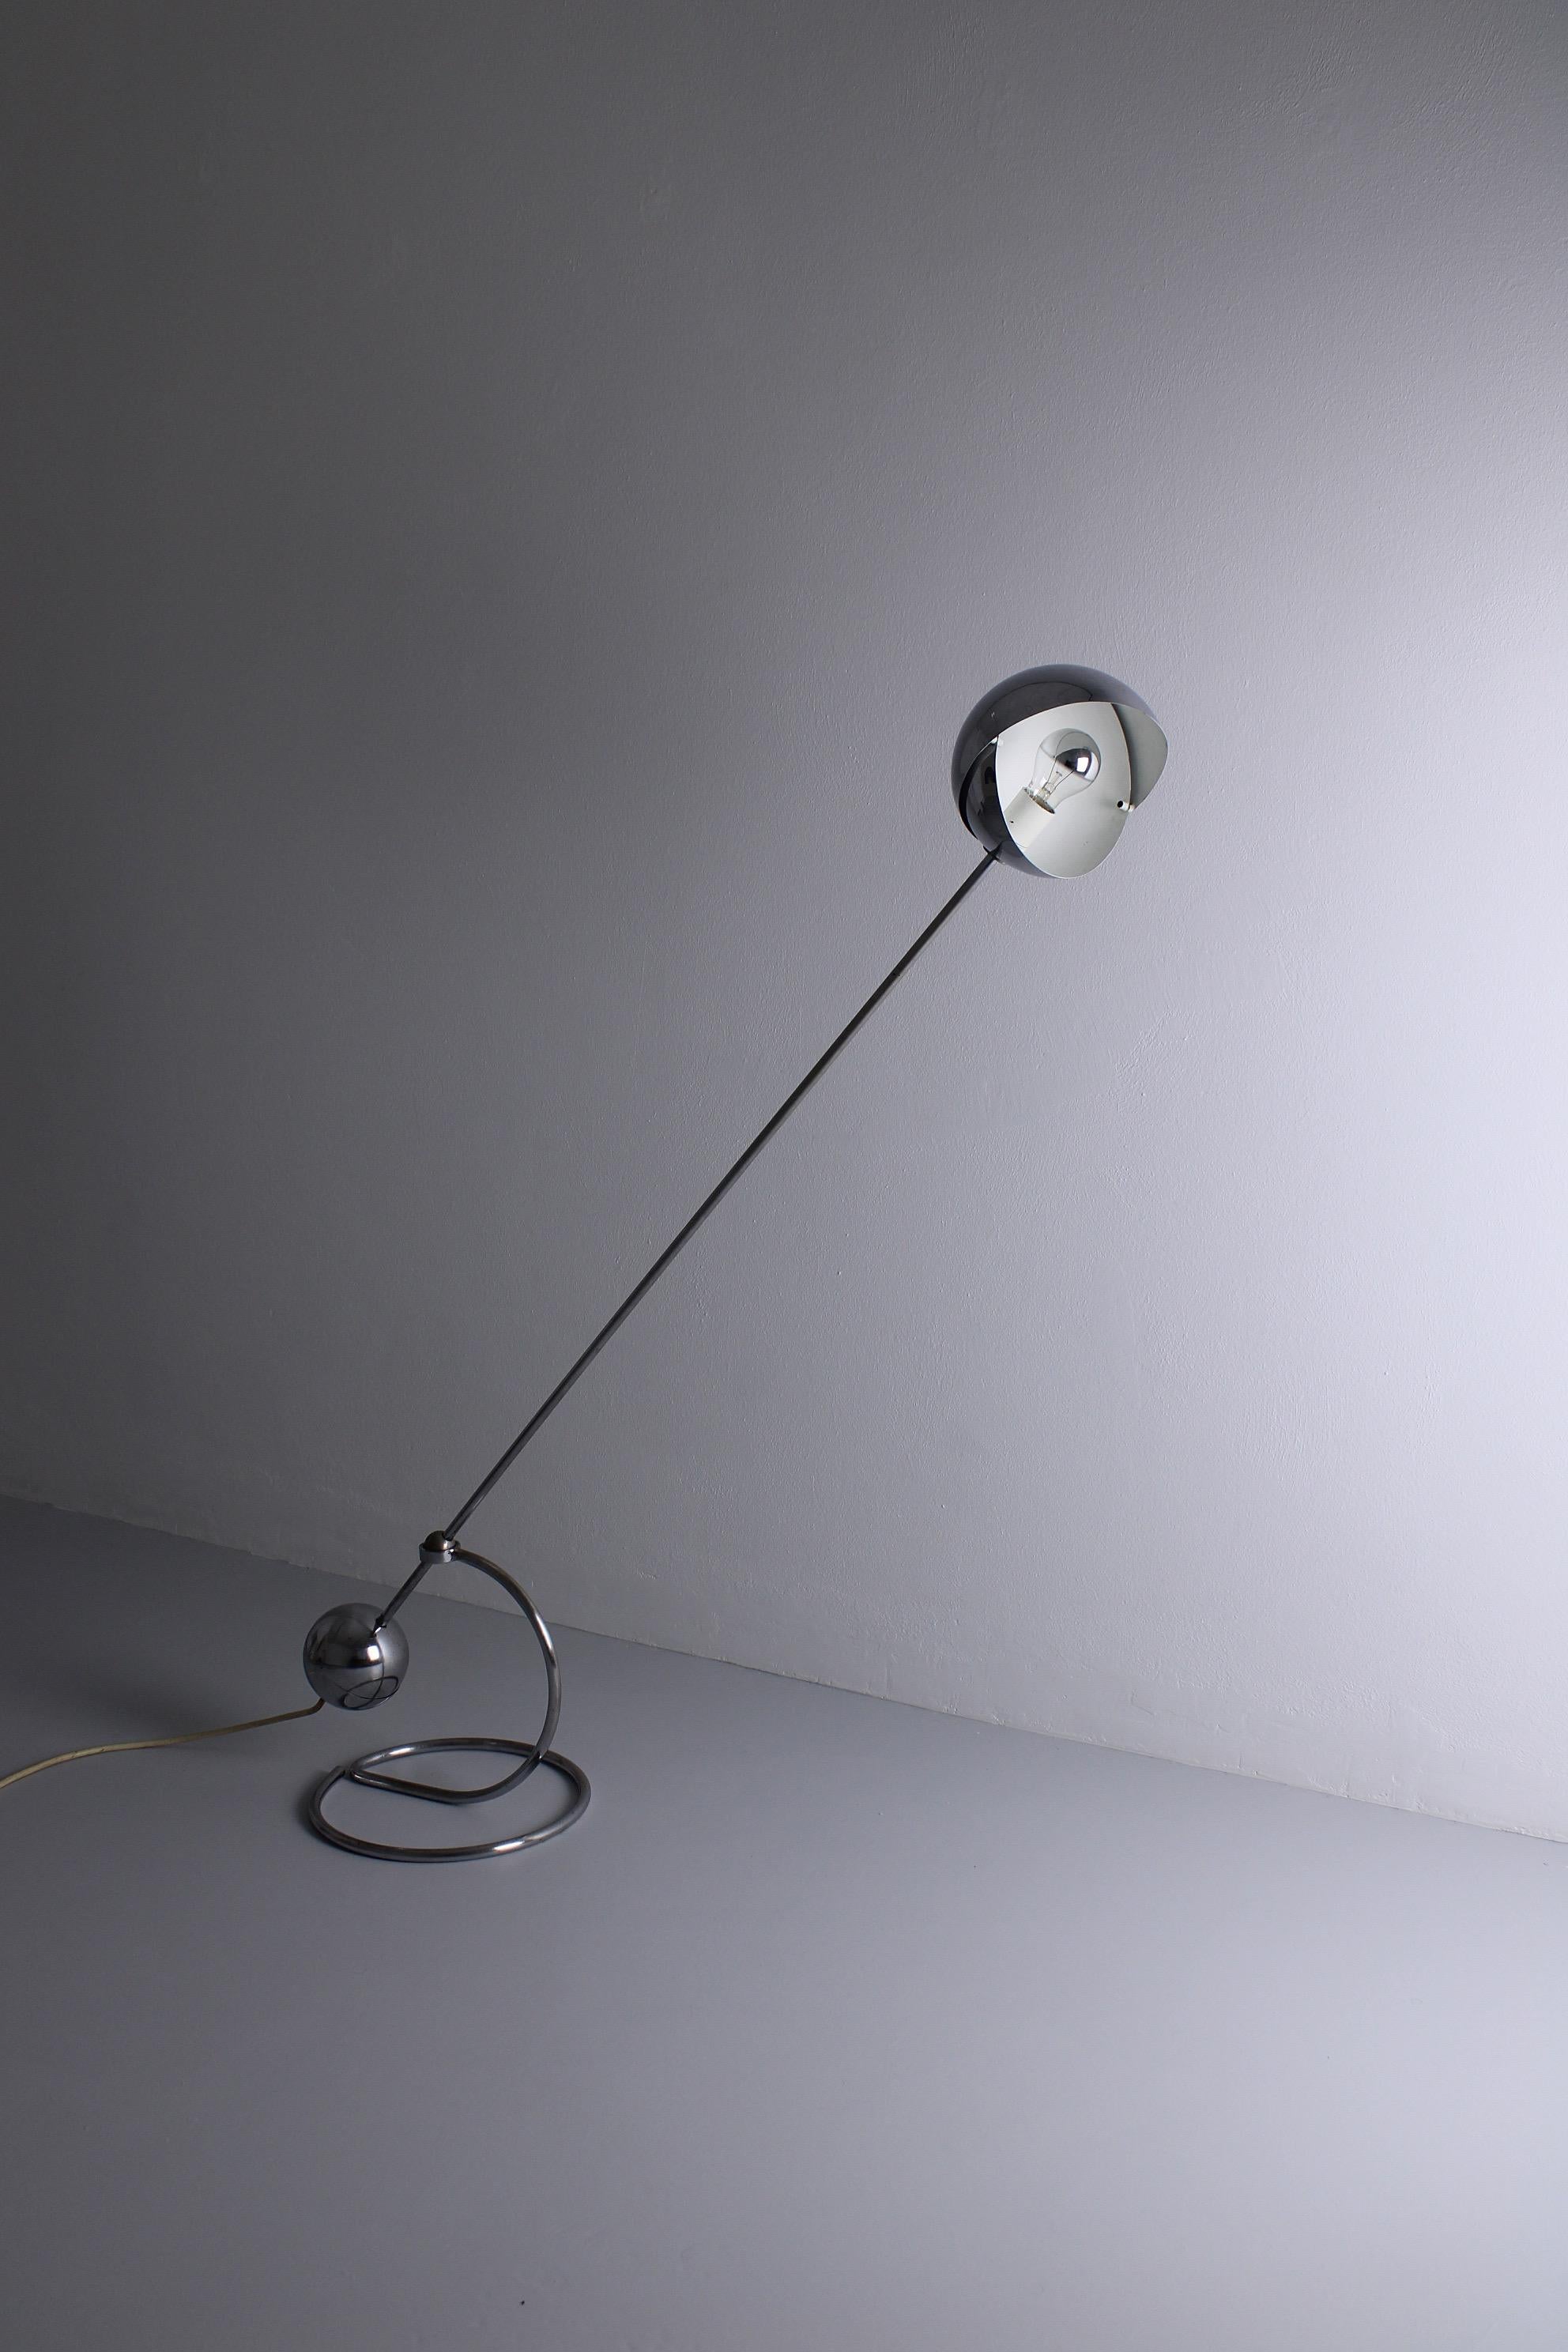 Le lampadaire modèle S3 a été conçu par Paolo Tilche pour Sirrah, Italie, en 1961. Cette pièce est dotée d'un contrepoids rond qui crée l'équilibre parfait pour l'ajuster. L'abat-jour rond est réglable et crée une très belle lumière sphérique